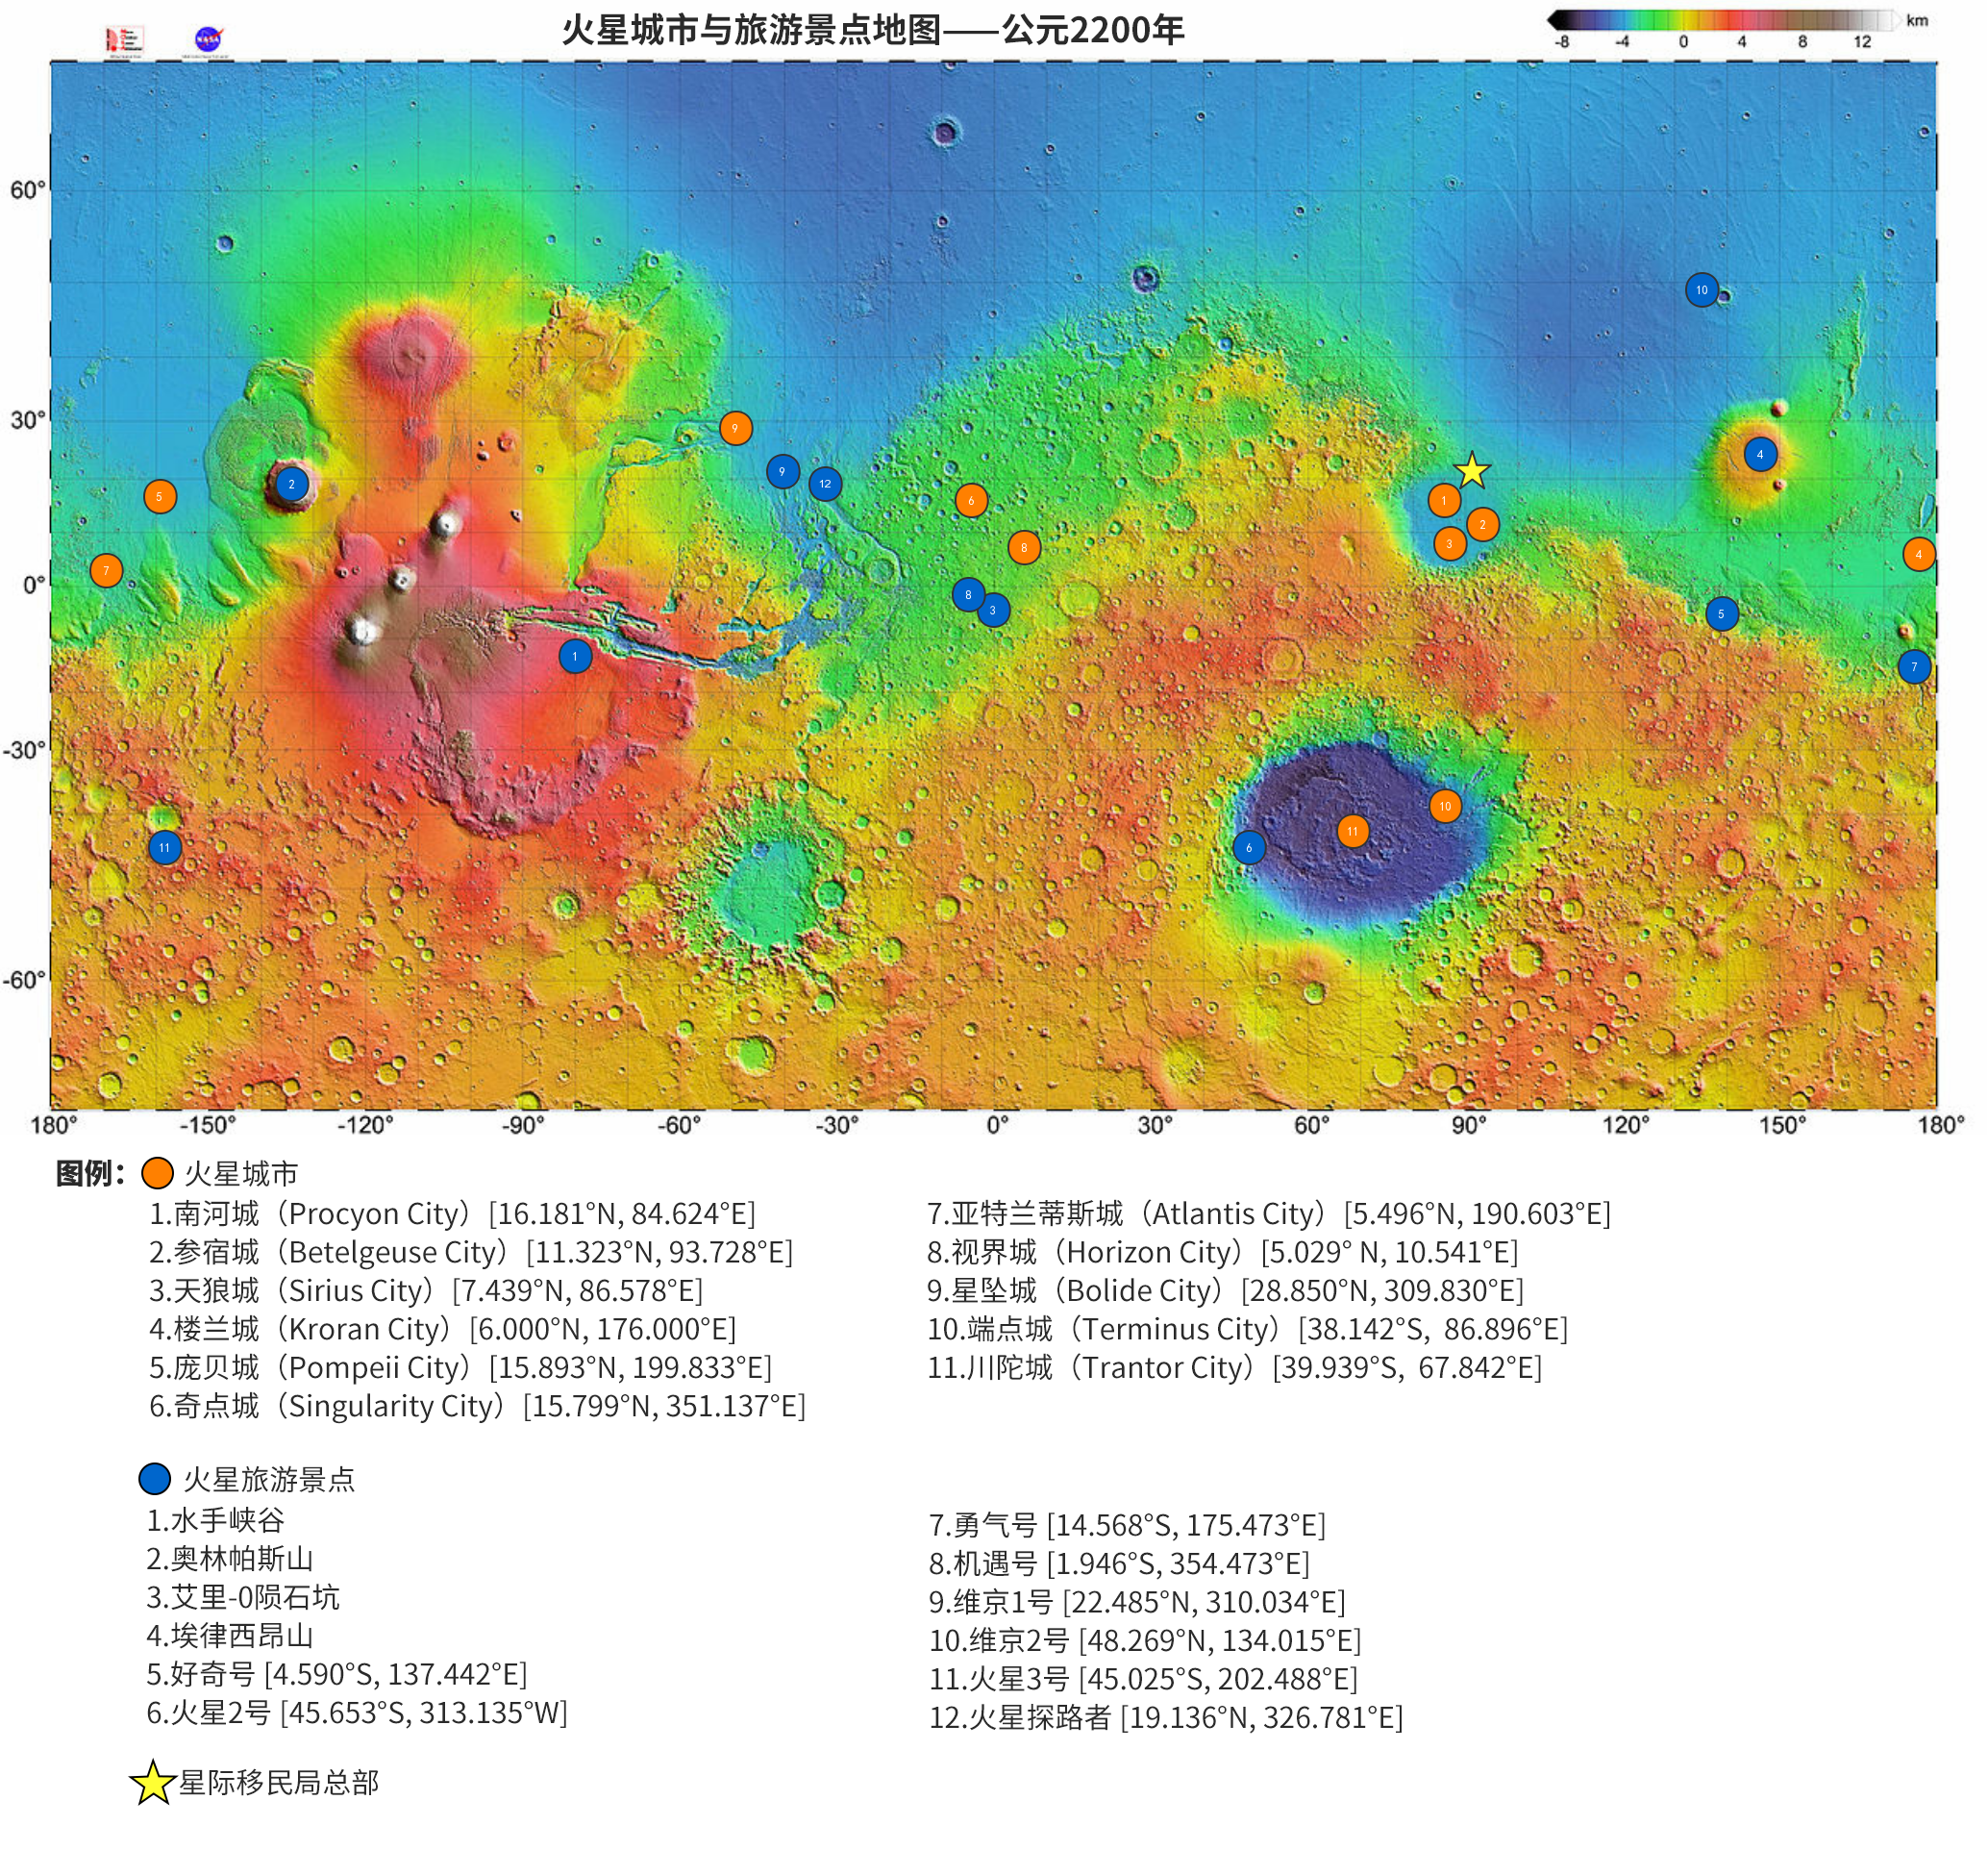 火星城市及旅游图。基于 NASA MOLA 地图制作。可以在我们的工具箱中使用互动版火星地图。在 Google Mars 中导入 此 KMZ 文件 ，可以观察火星城市具体位置。